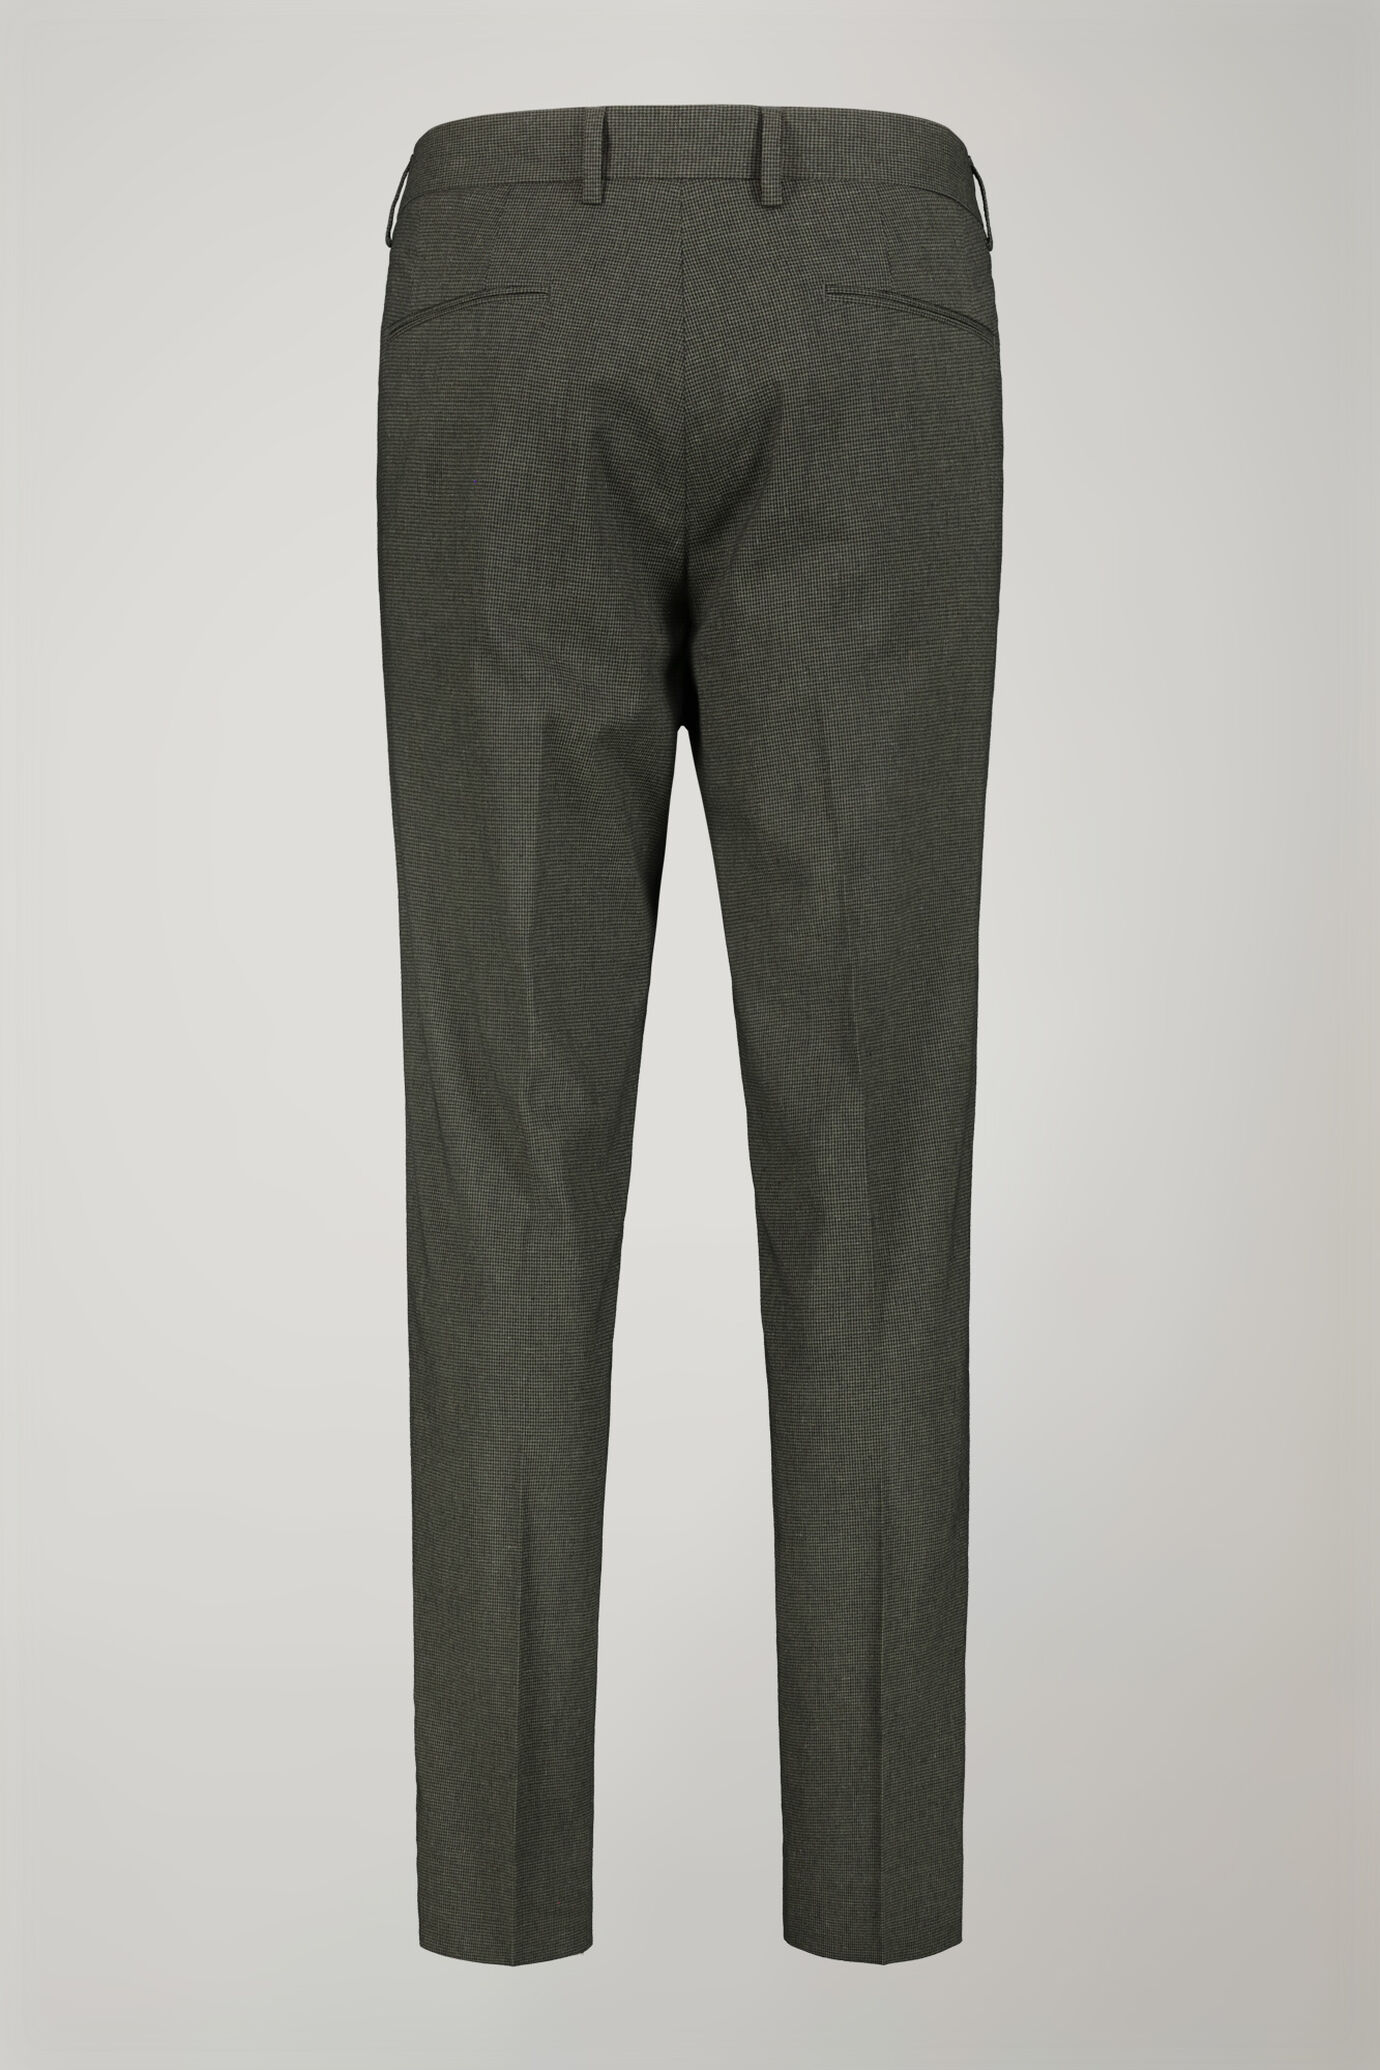 Pantalon homme classique à double pince, tissu avec motif micro pied-de-poule coupe régulière image number 5